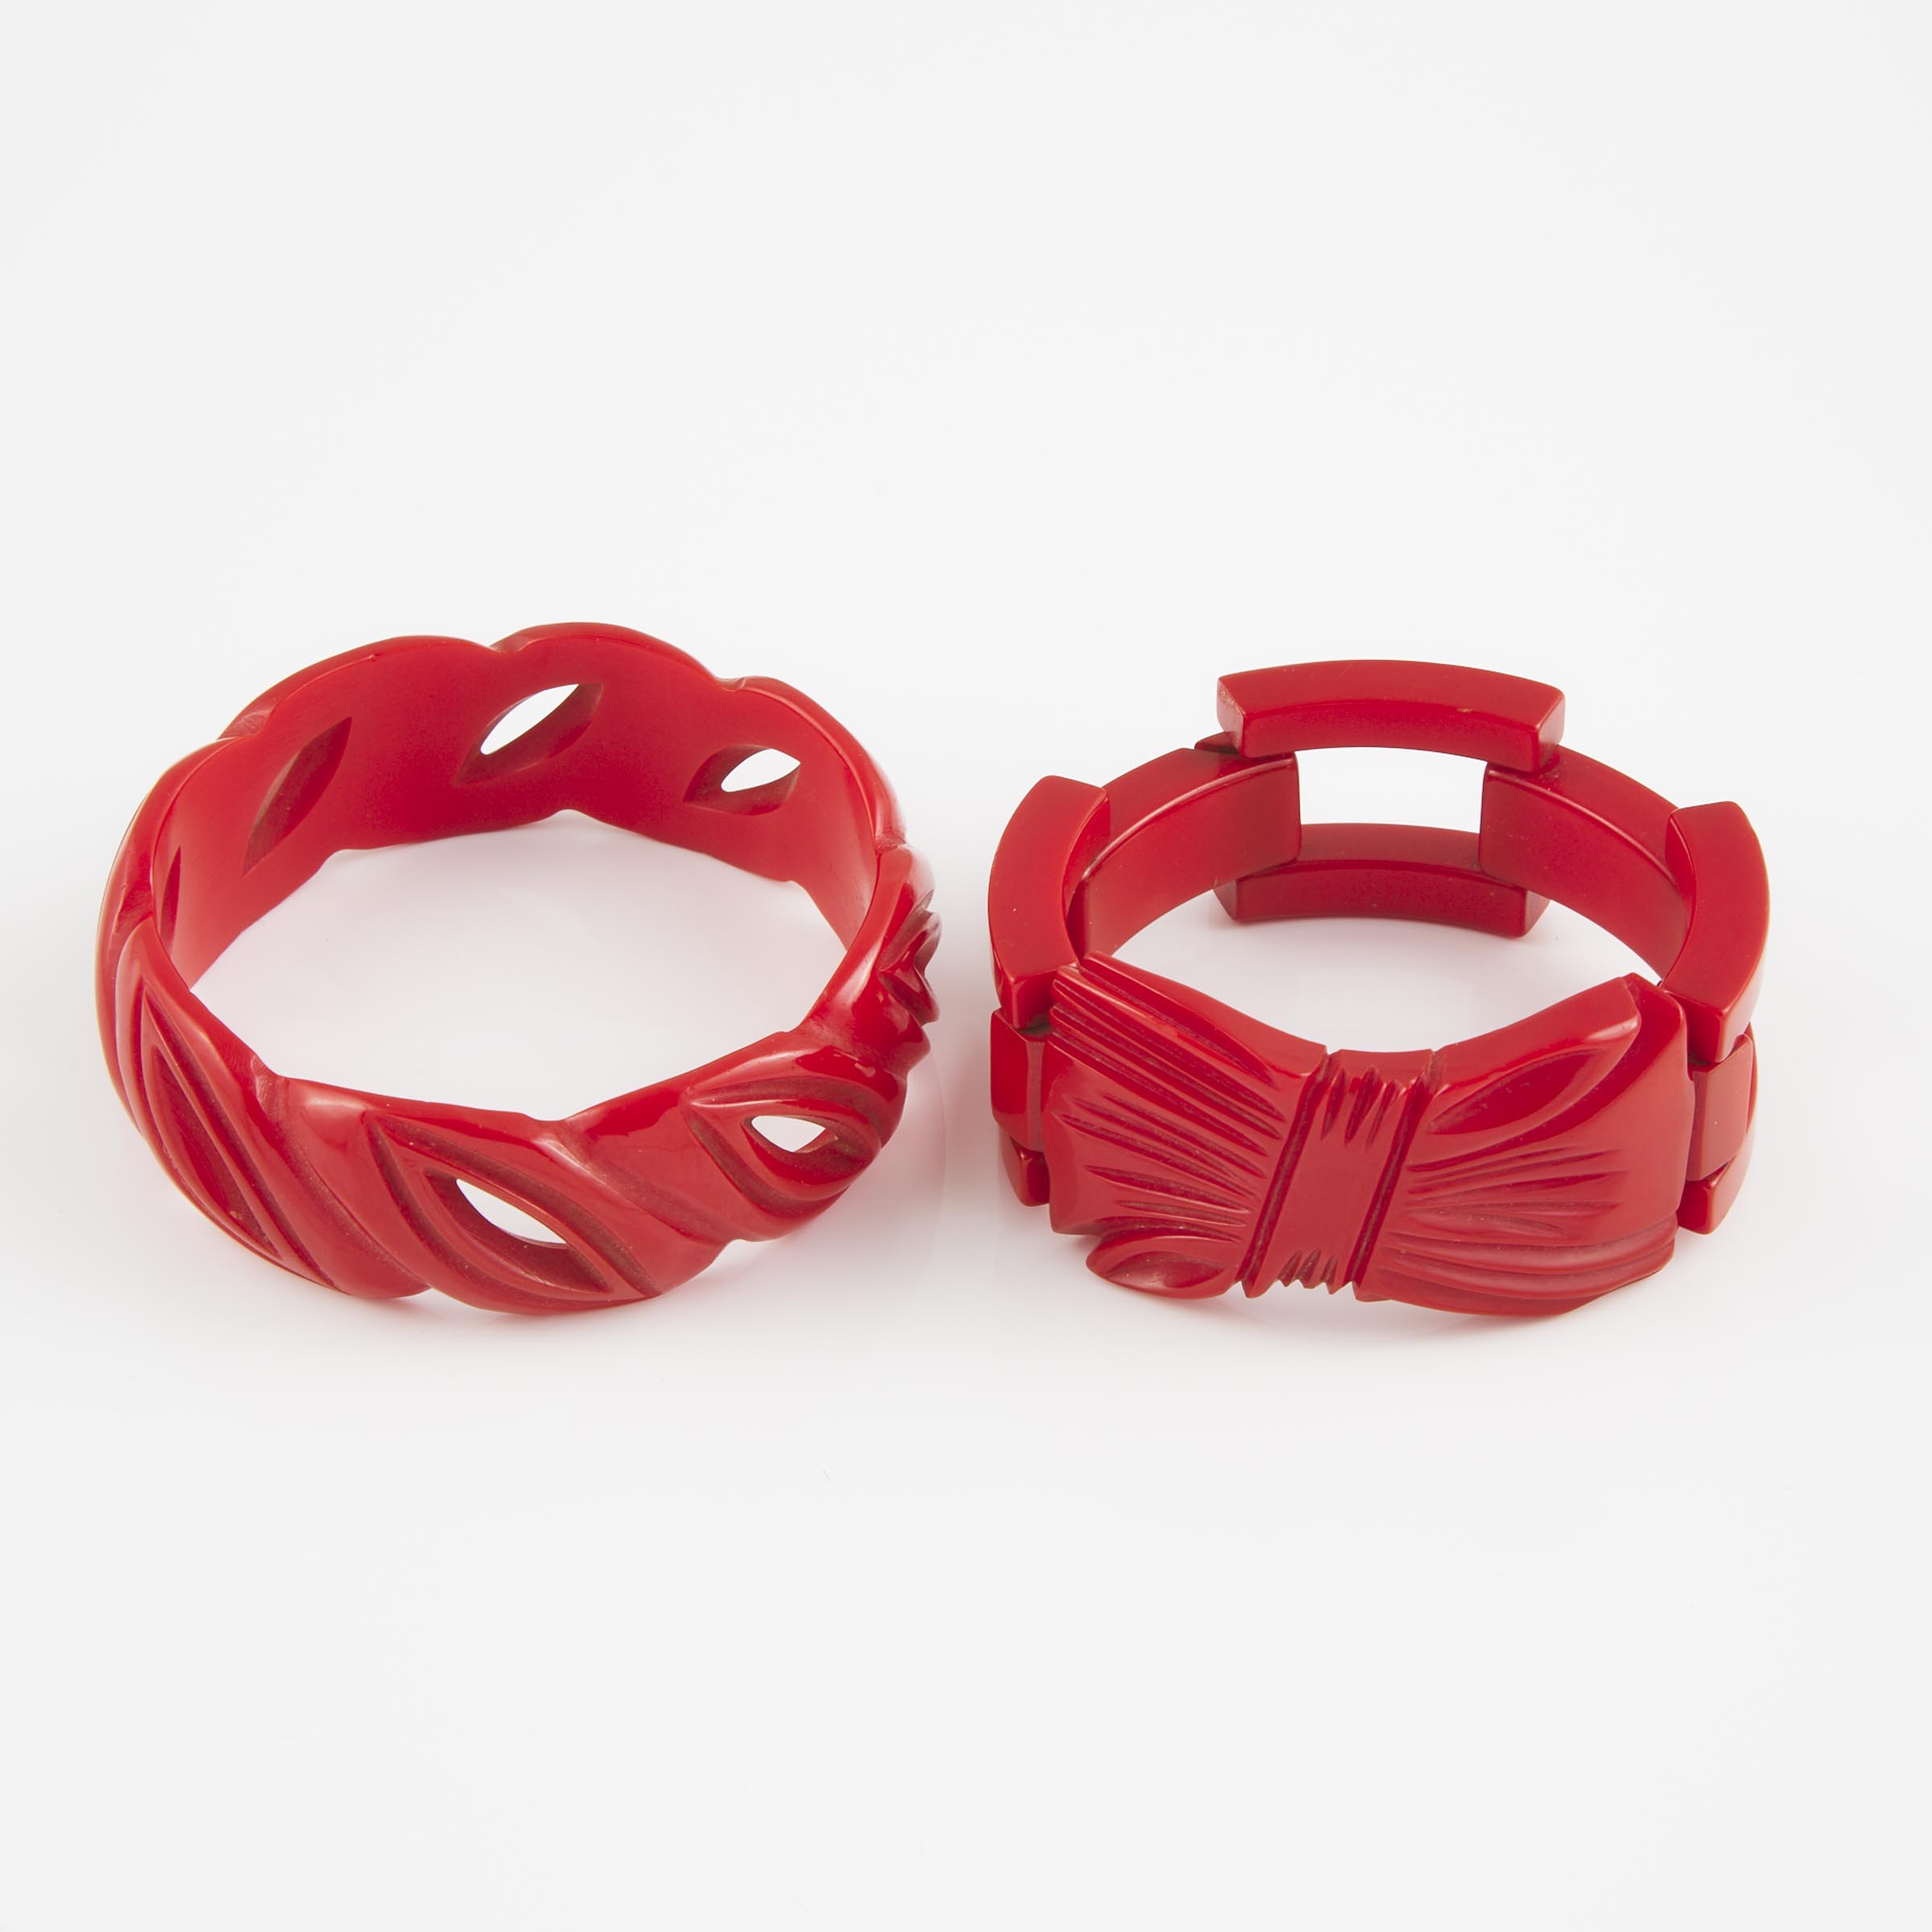 2 Carved Red Bakelite Bracelets 2f20a7